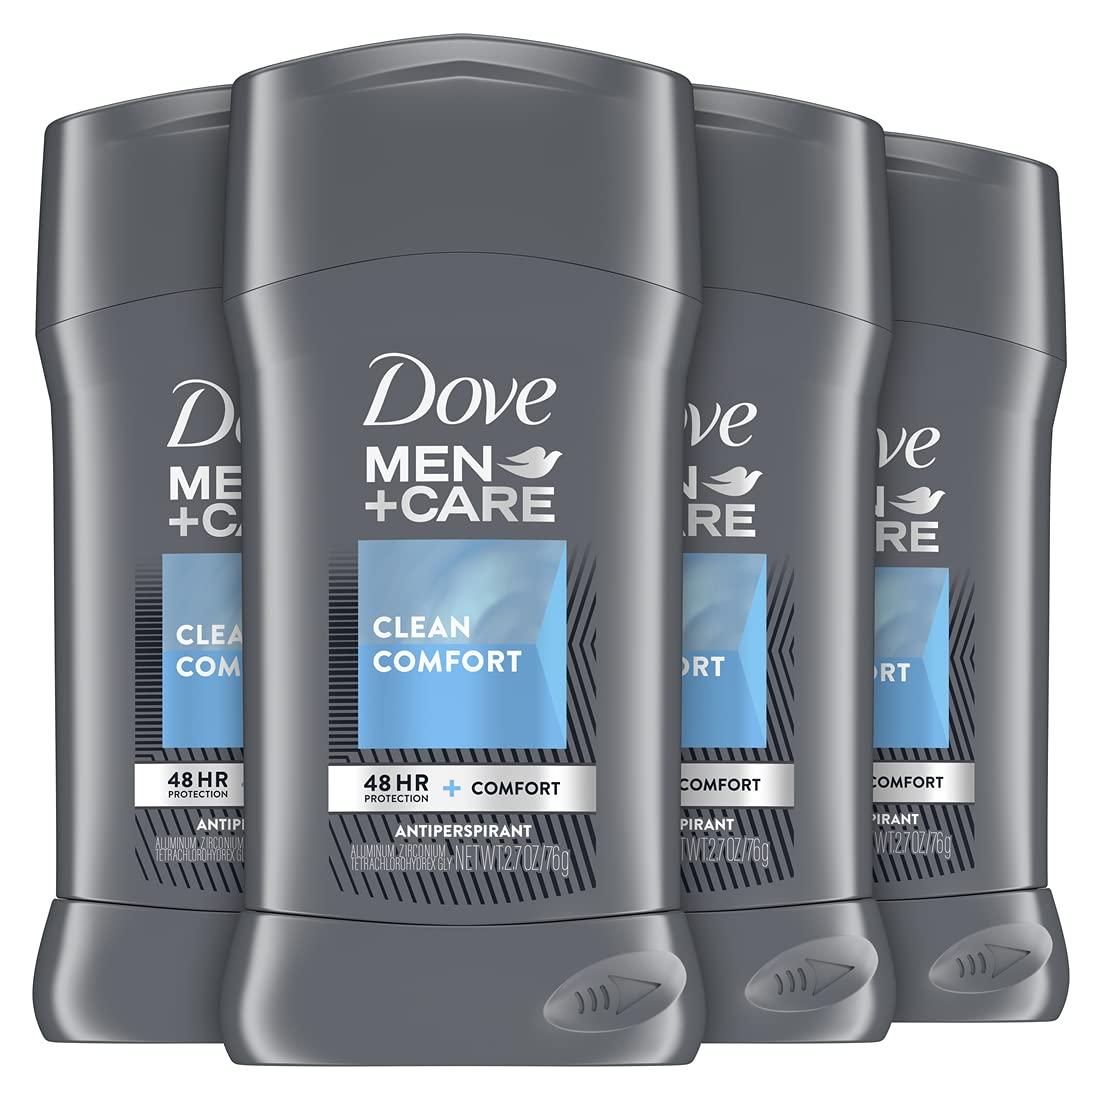 4 Dove Men Care Antiperspirant Deodorant for $10.10 Shipped